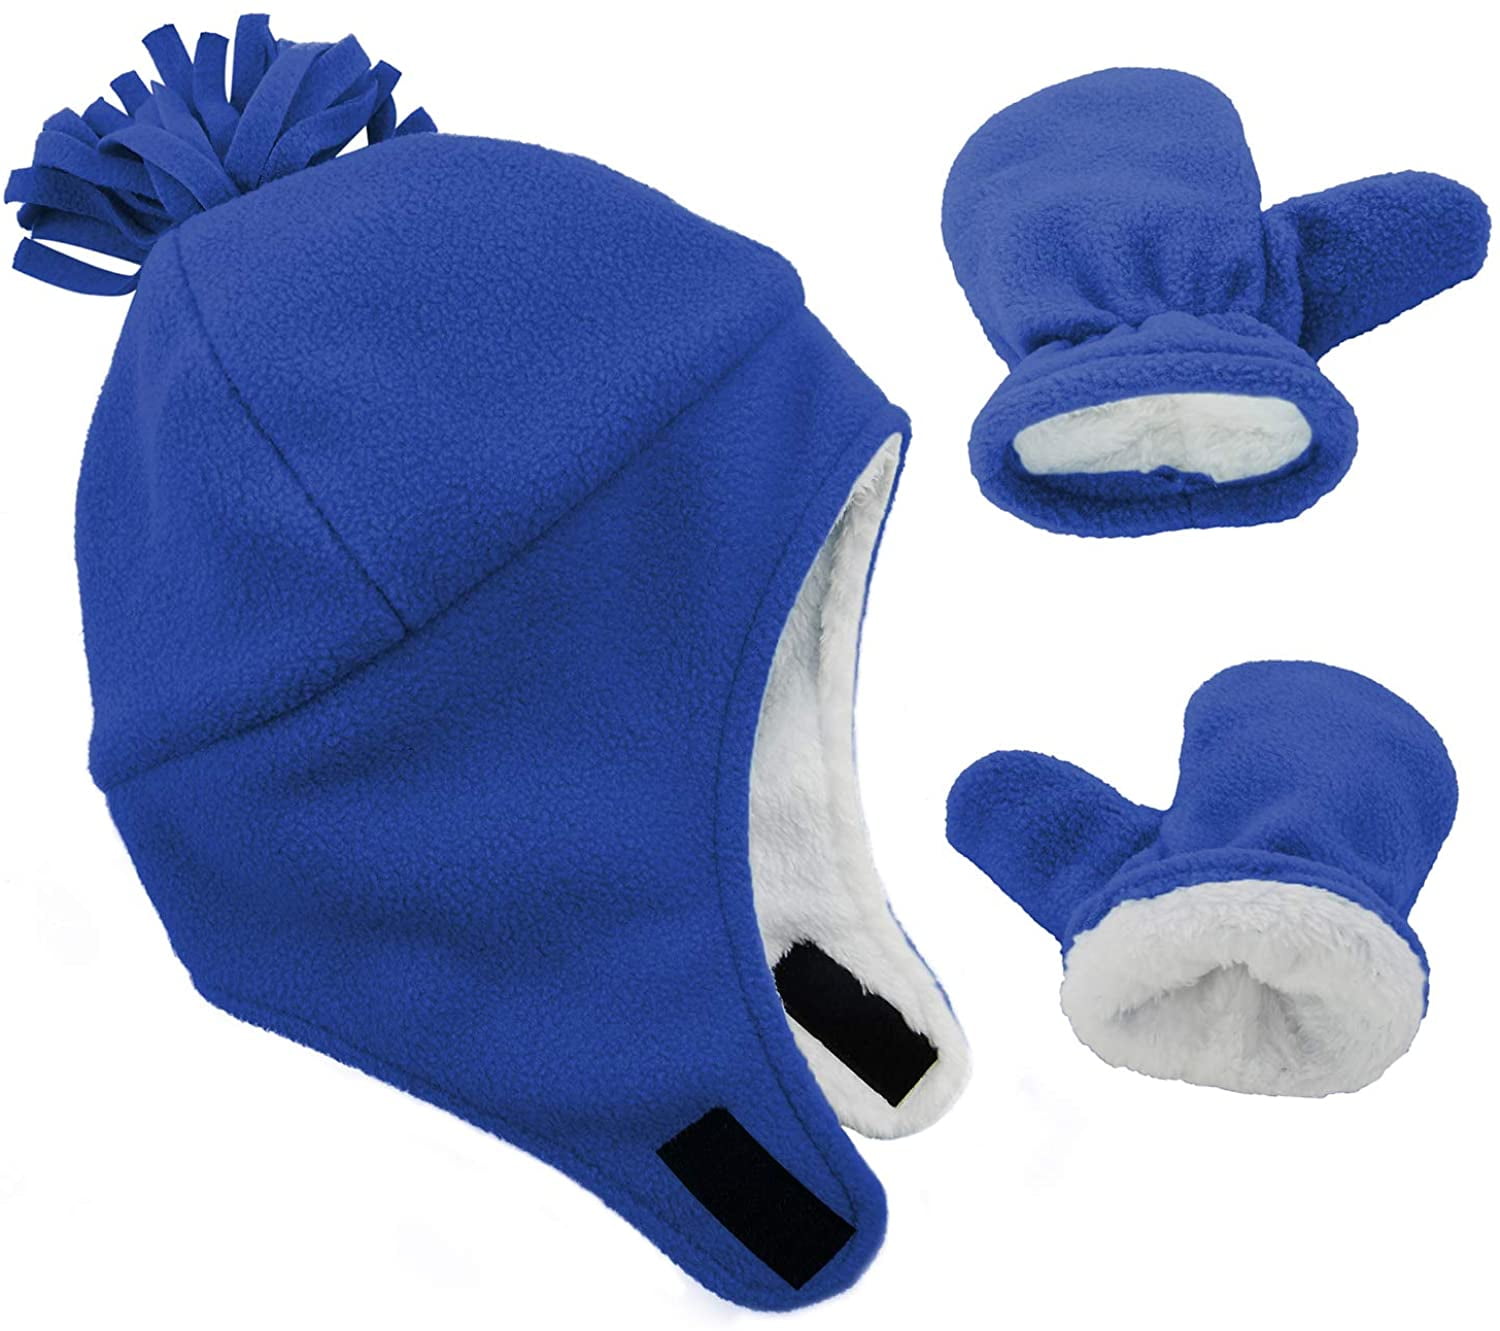 Zando Boys Mittens Reindeer Christmas Gloves for Baby Boys Winter Gloves Soft Knit Gloves for Kids Boys Girls Unisex 